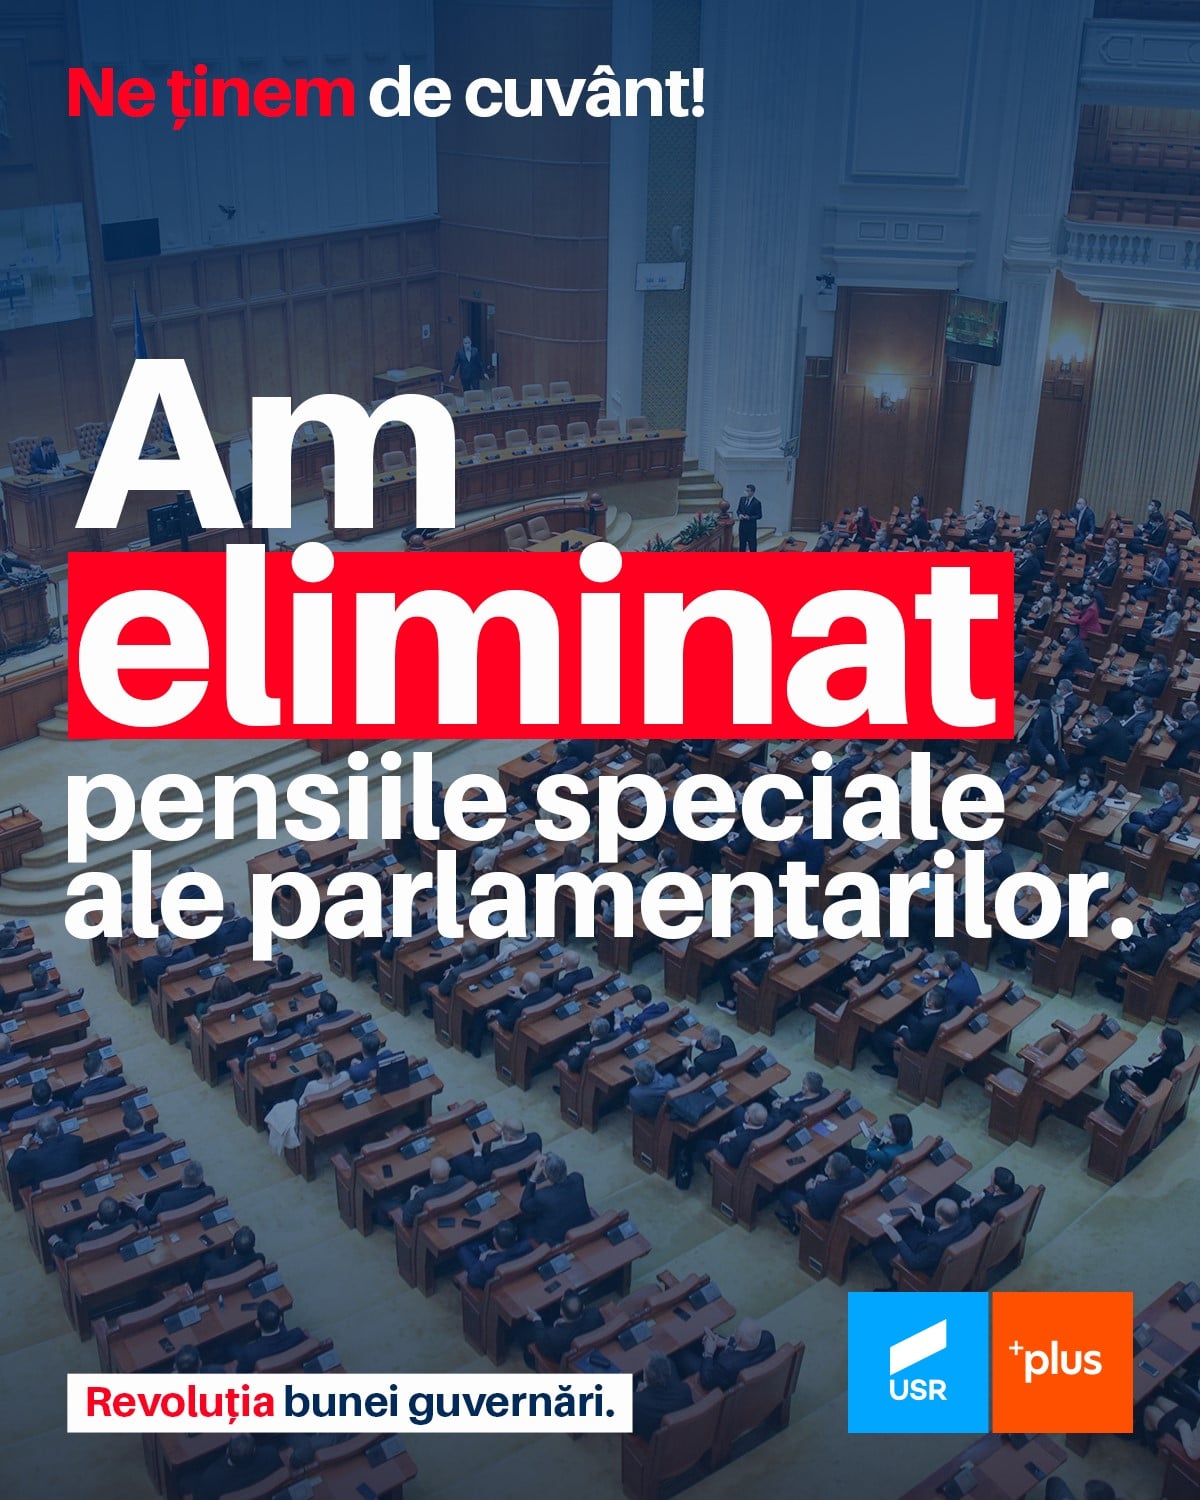 Daniel Blaga, deputat USR PLUS de Dâmboviţa: “Pensiile speciale ale parlamentarilor sunt eliminate”